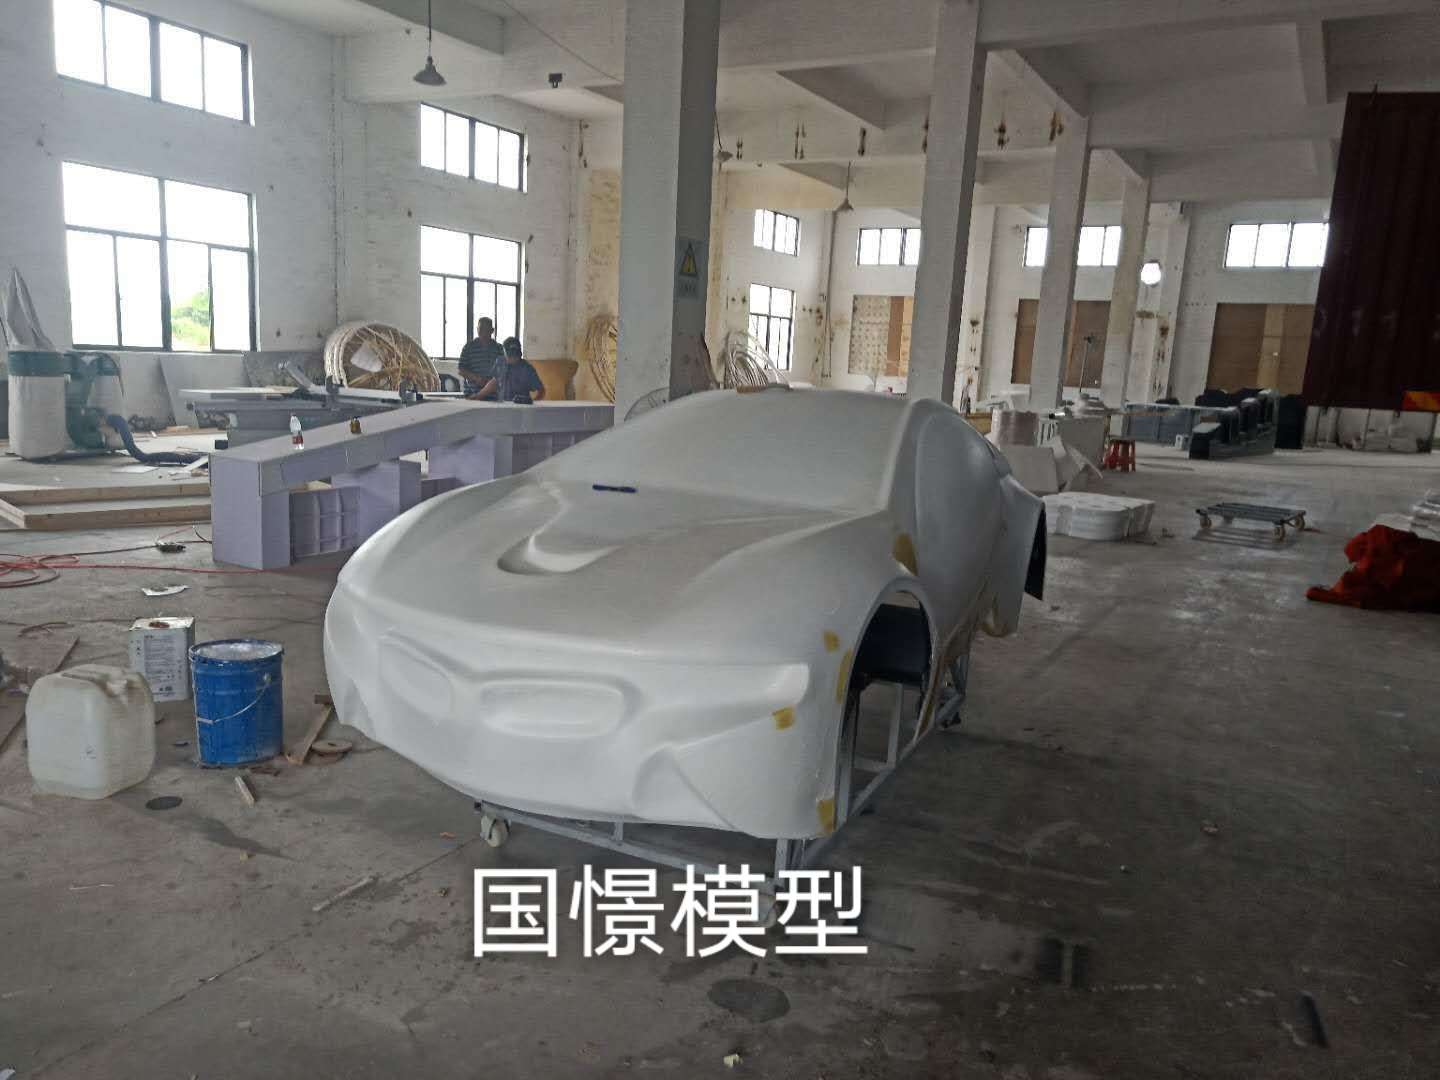 屏南县车辆模型